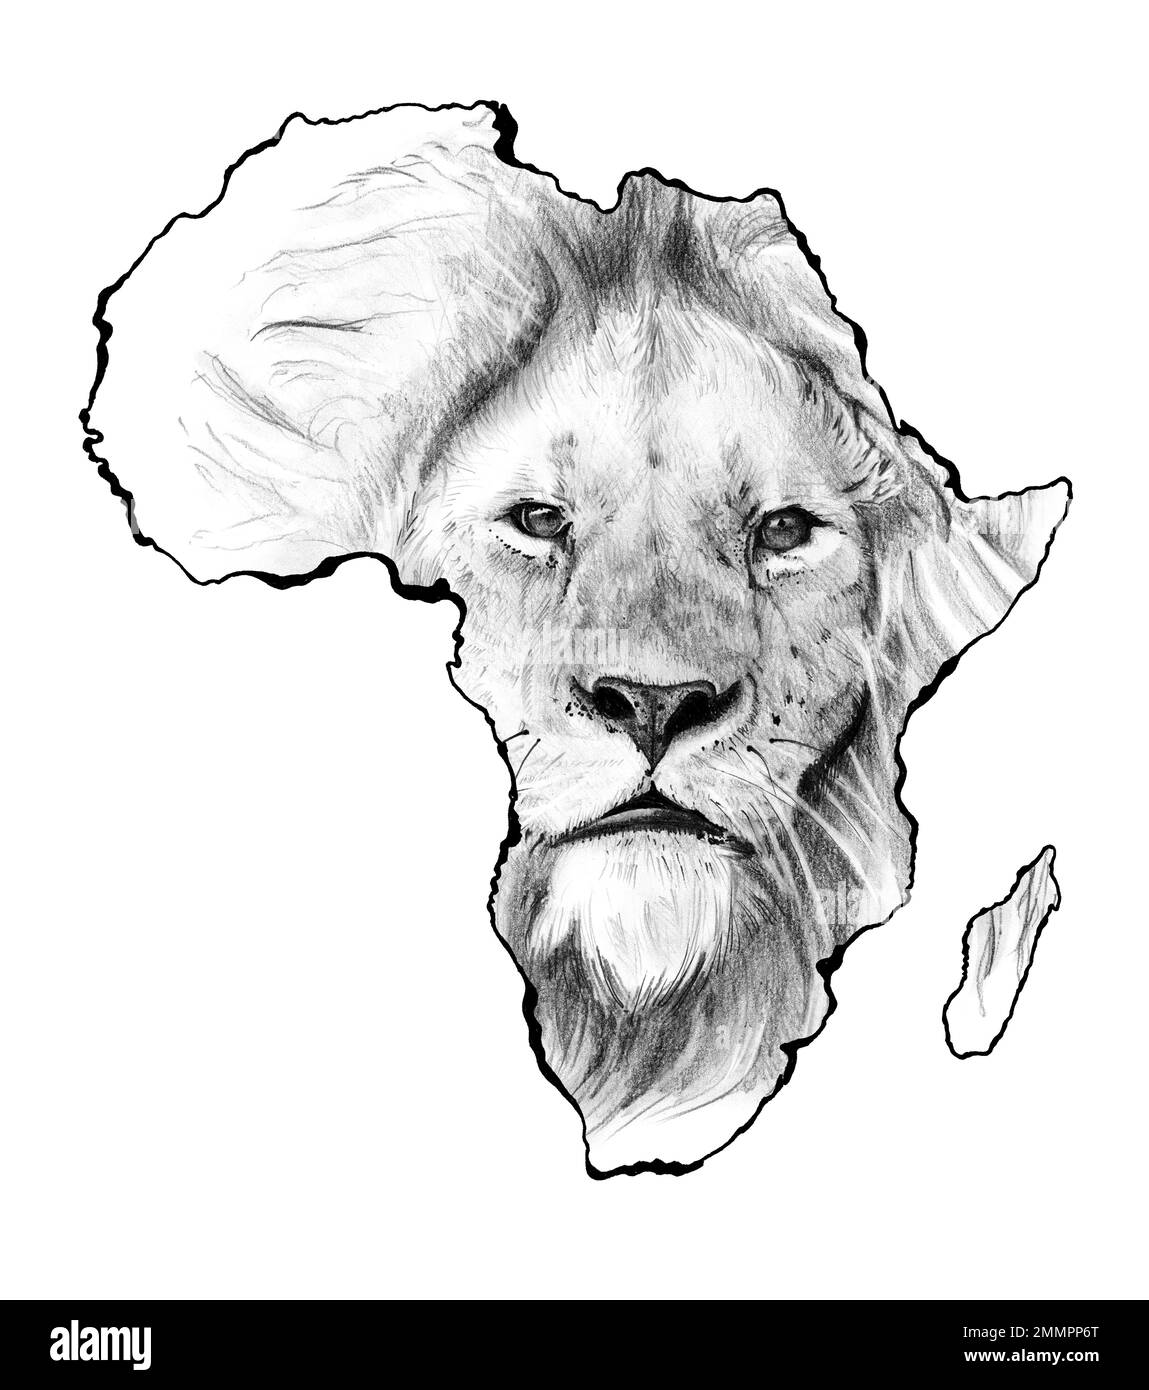 Faune africaine, dessin à la main du visage de lion sur la carte de l'afrique Banque D'Images